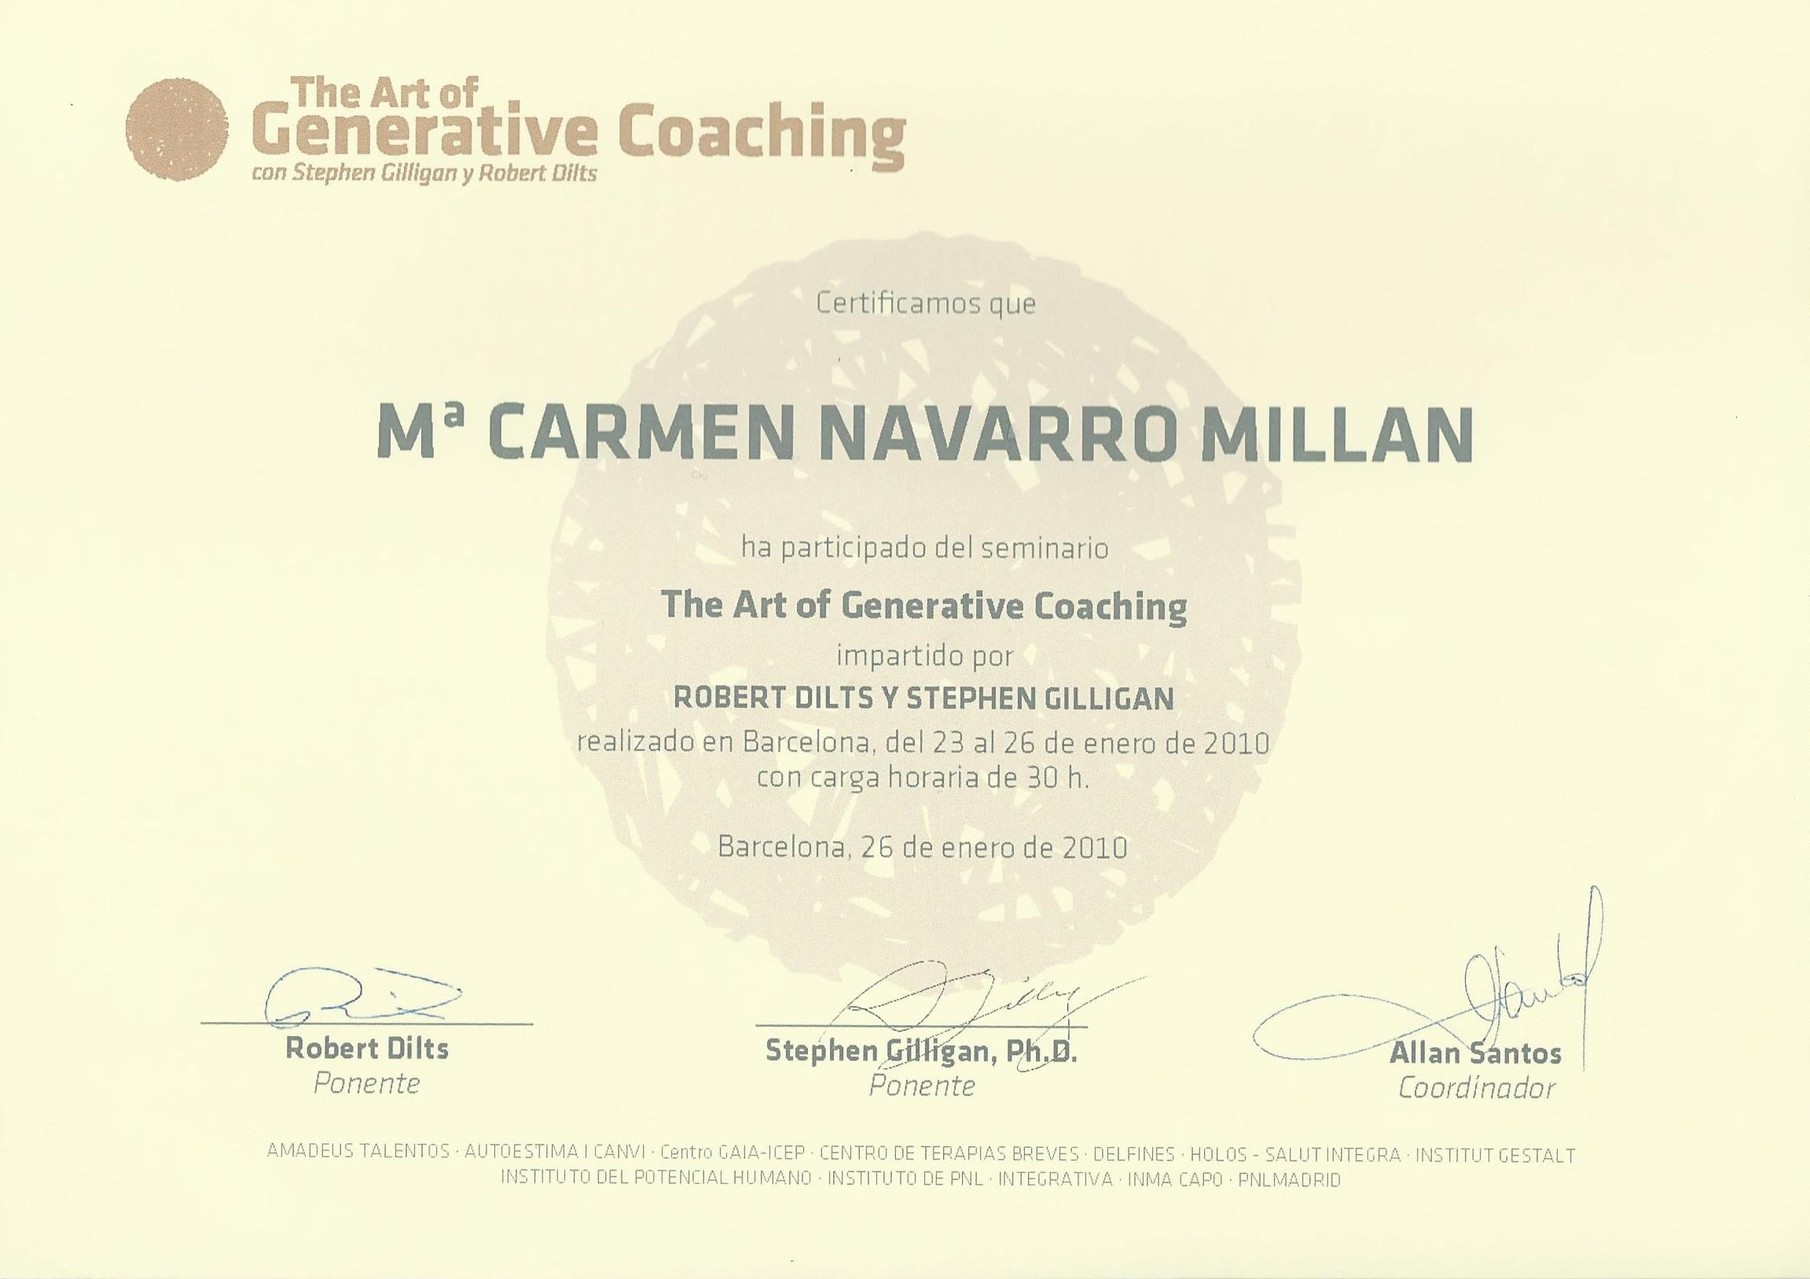 Generative coaching